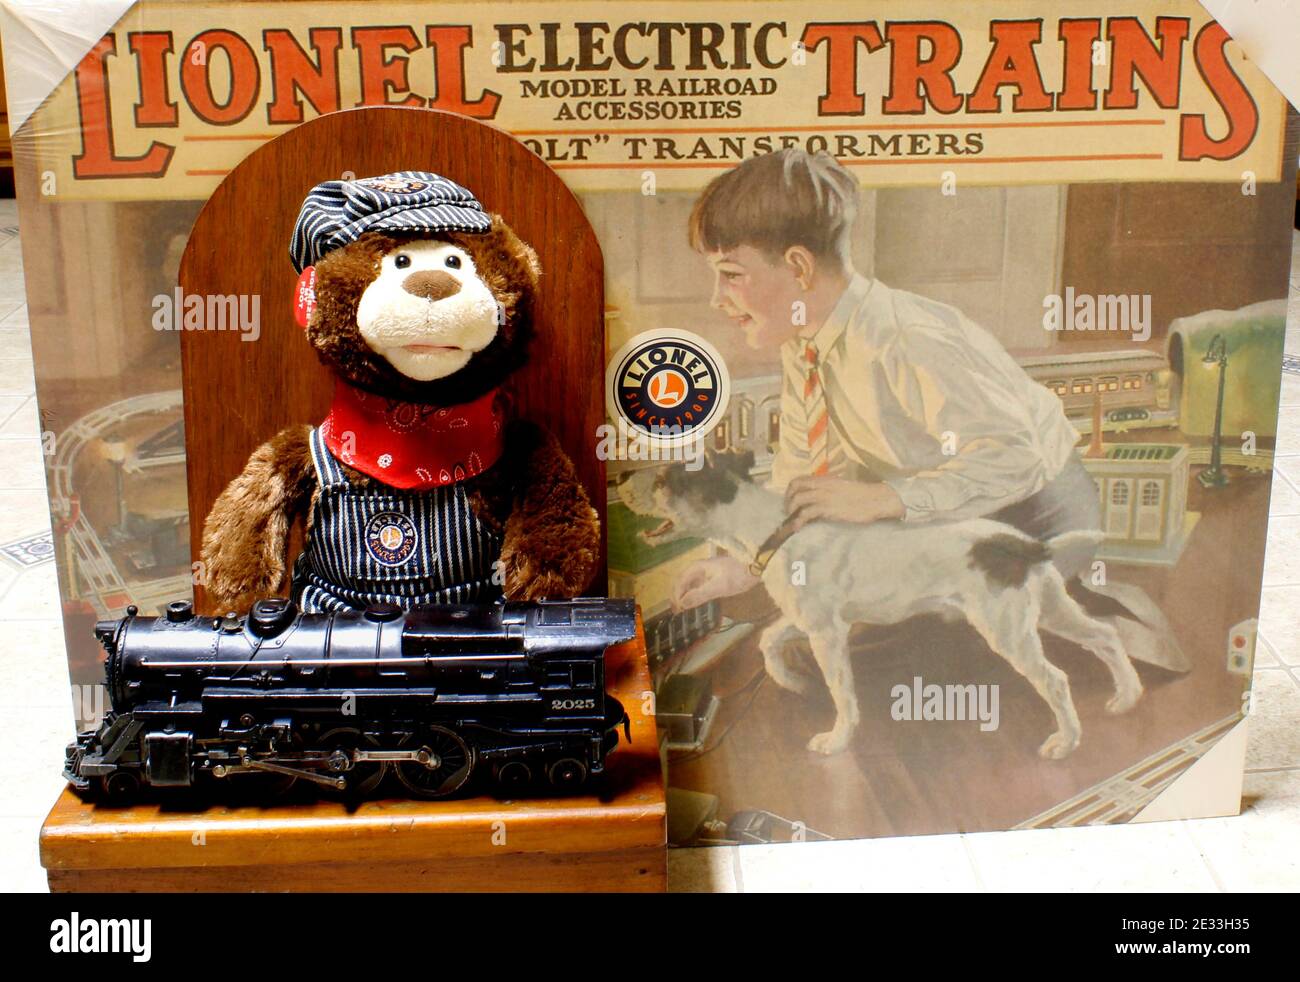 La photo représente la publicité de Lionel, un ingénieur ours en peluche, ainsi qu'une machine à vapeur Lionel 2025. Banque D'Images